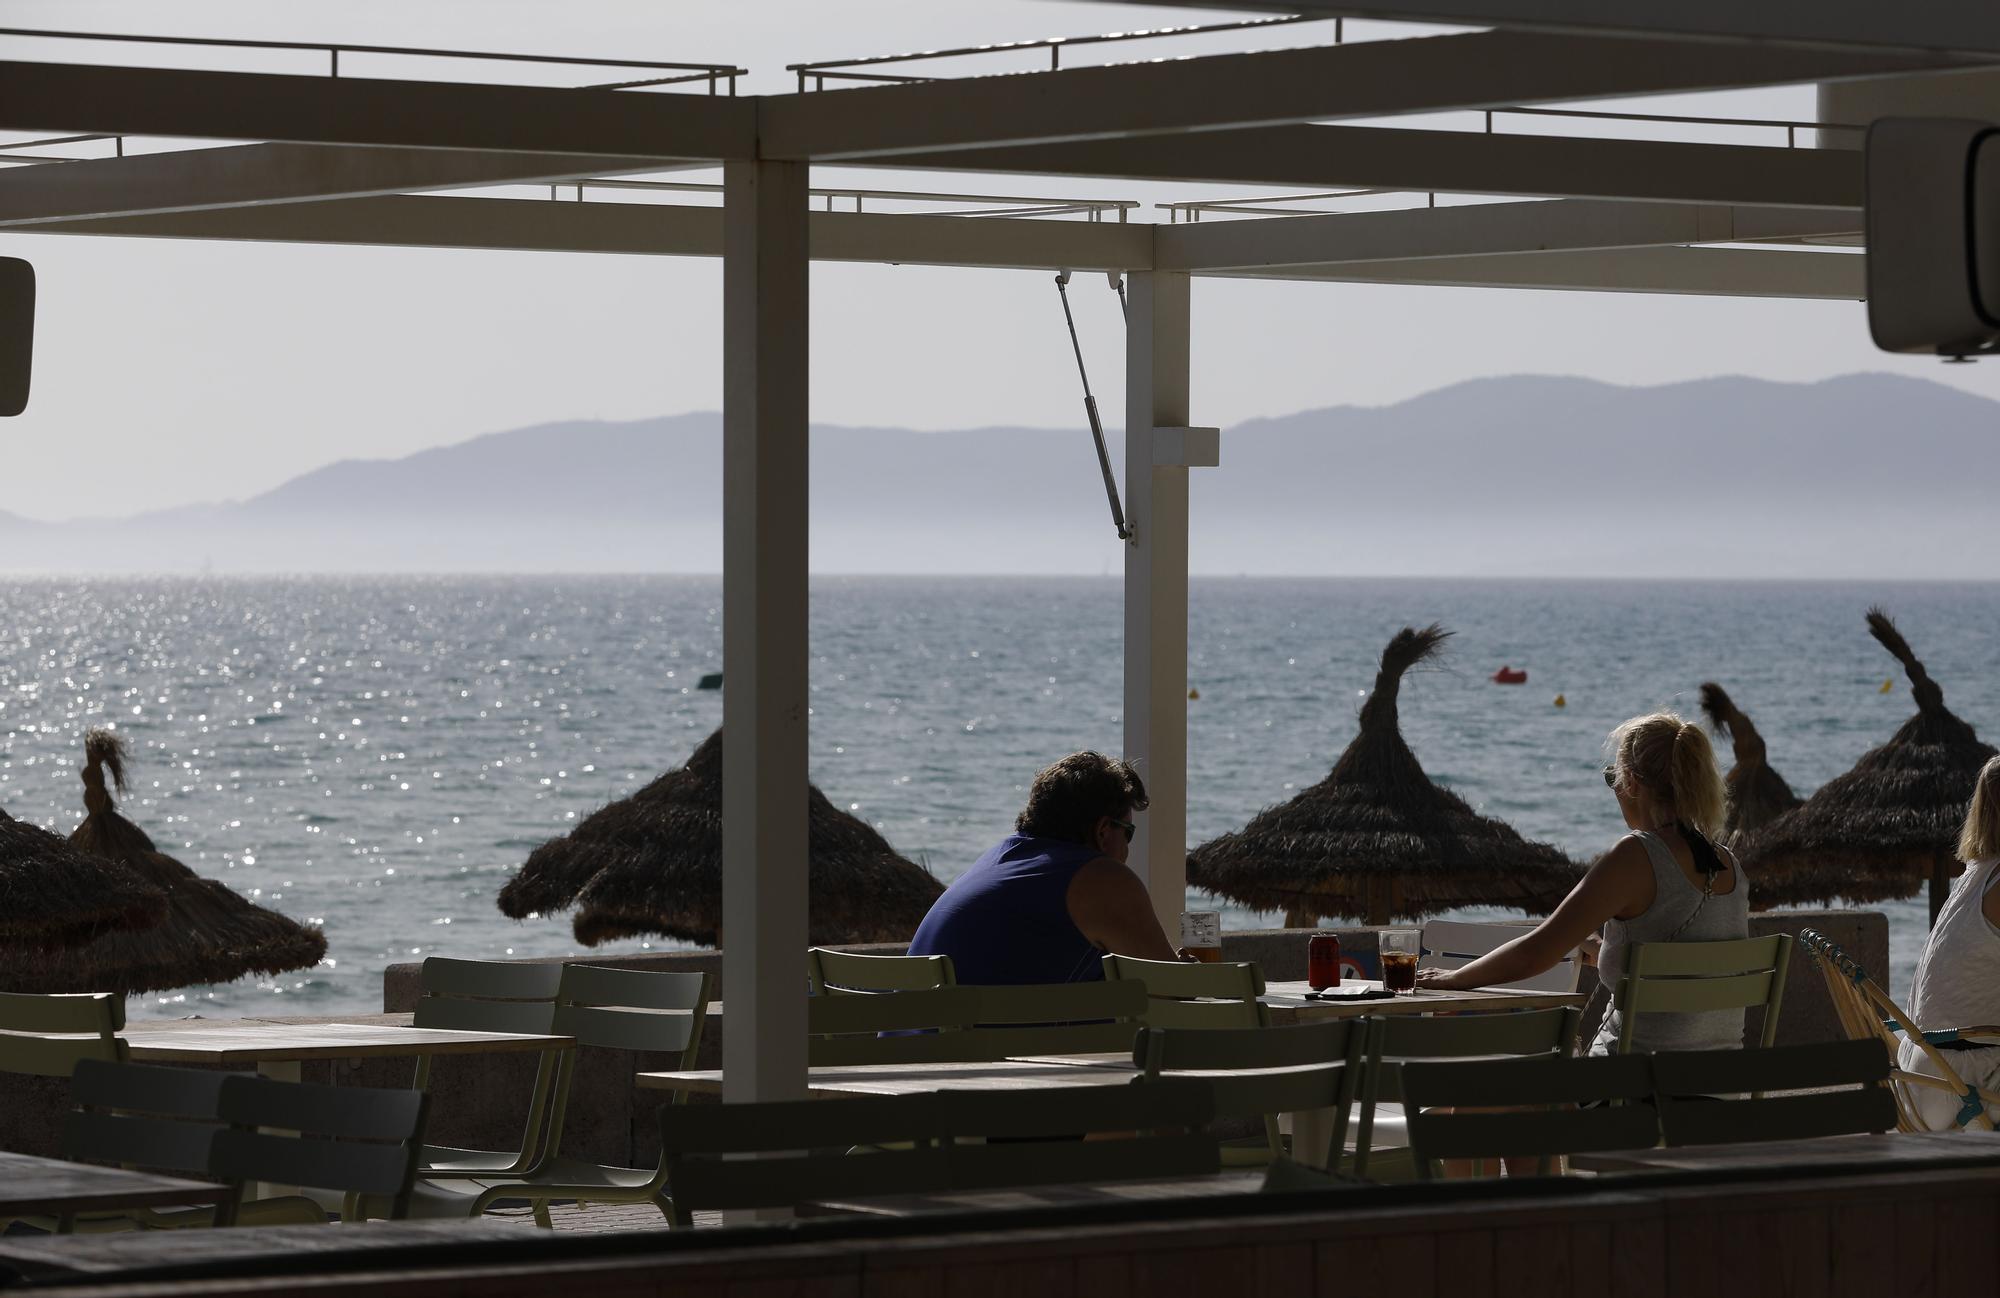 Sonne, Bier und Baden: So sieht es derzeit an der Playa de Palma auf Mallorca aus